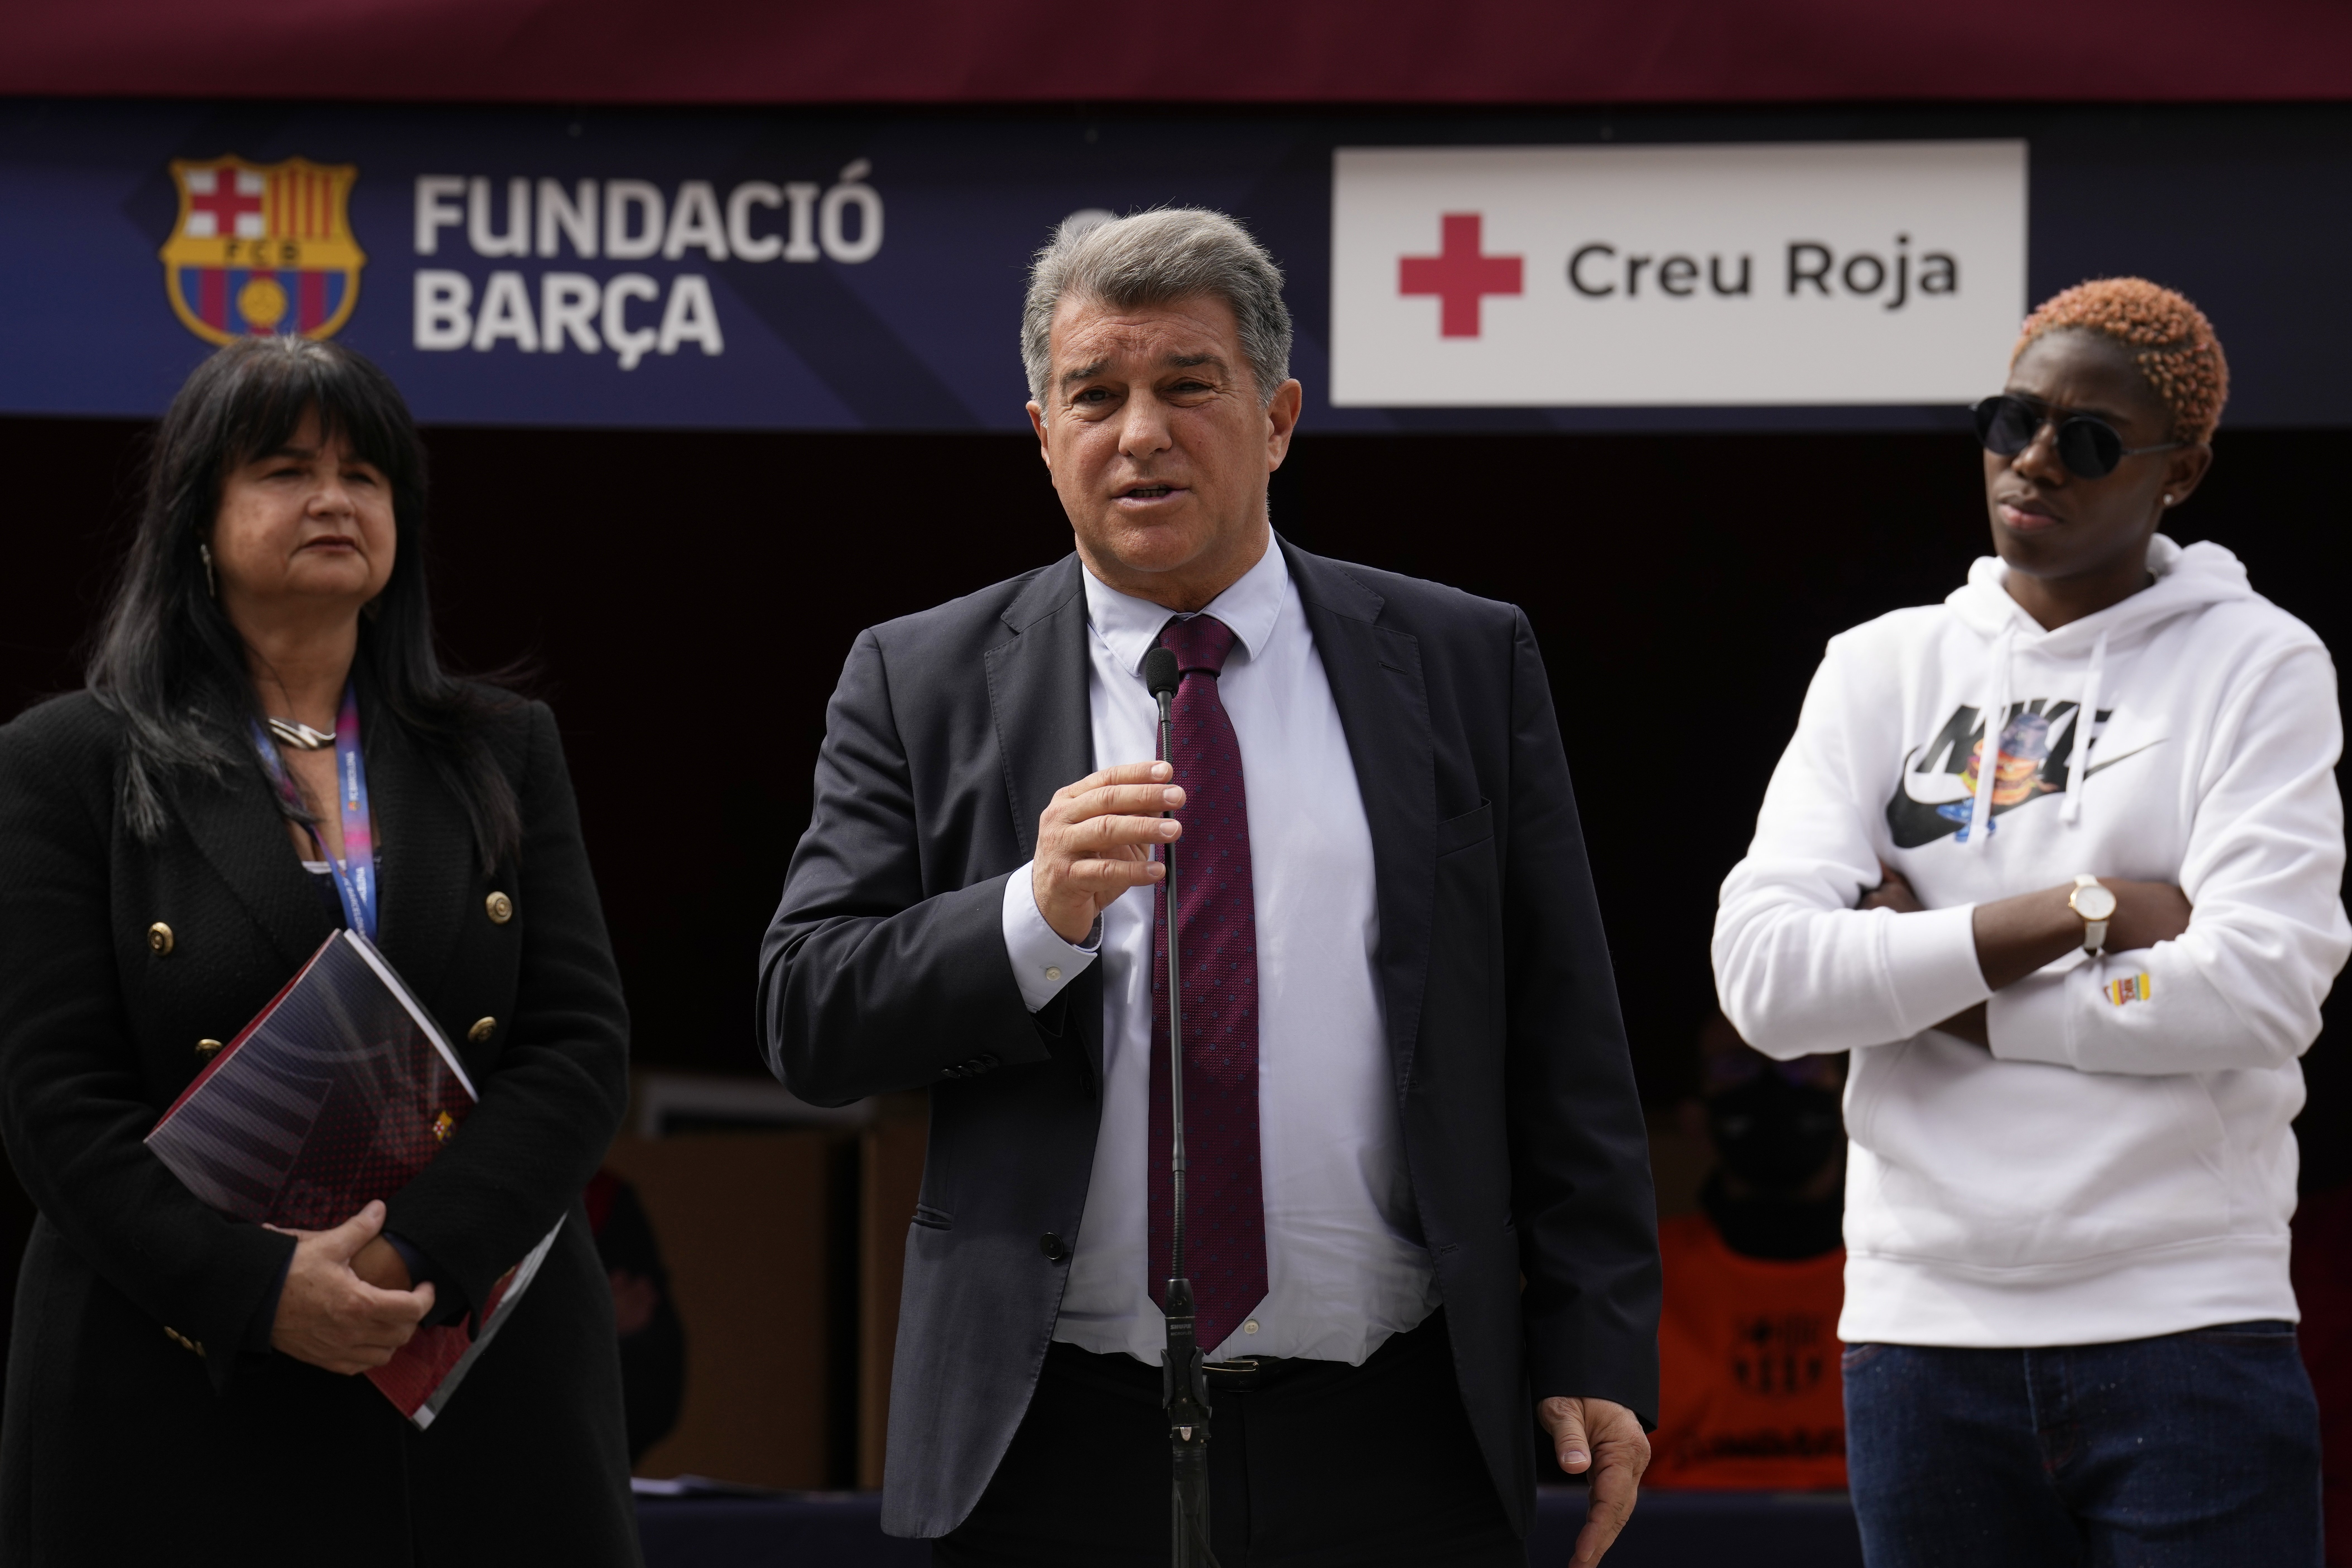 8 milions per trair Joan Laporta i el jugador és més a prop d'agafar els diners que elegir al Barça